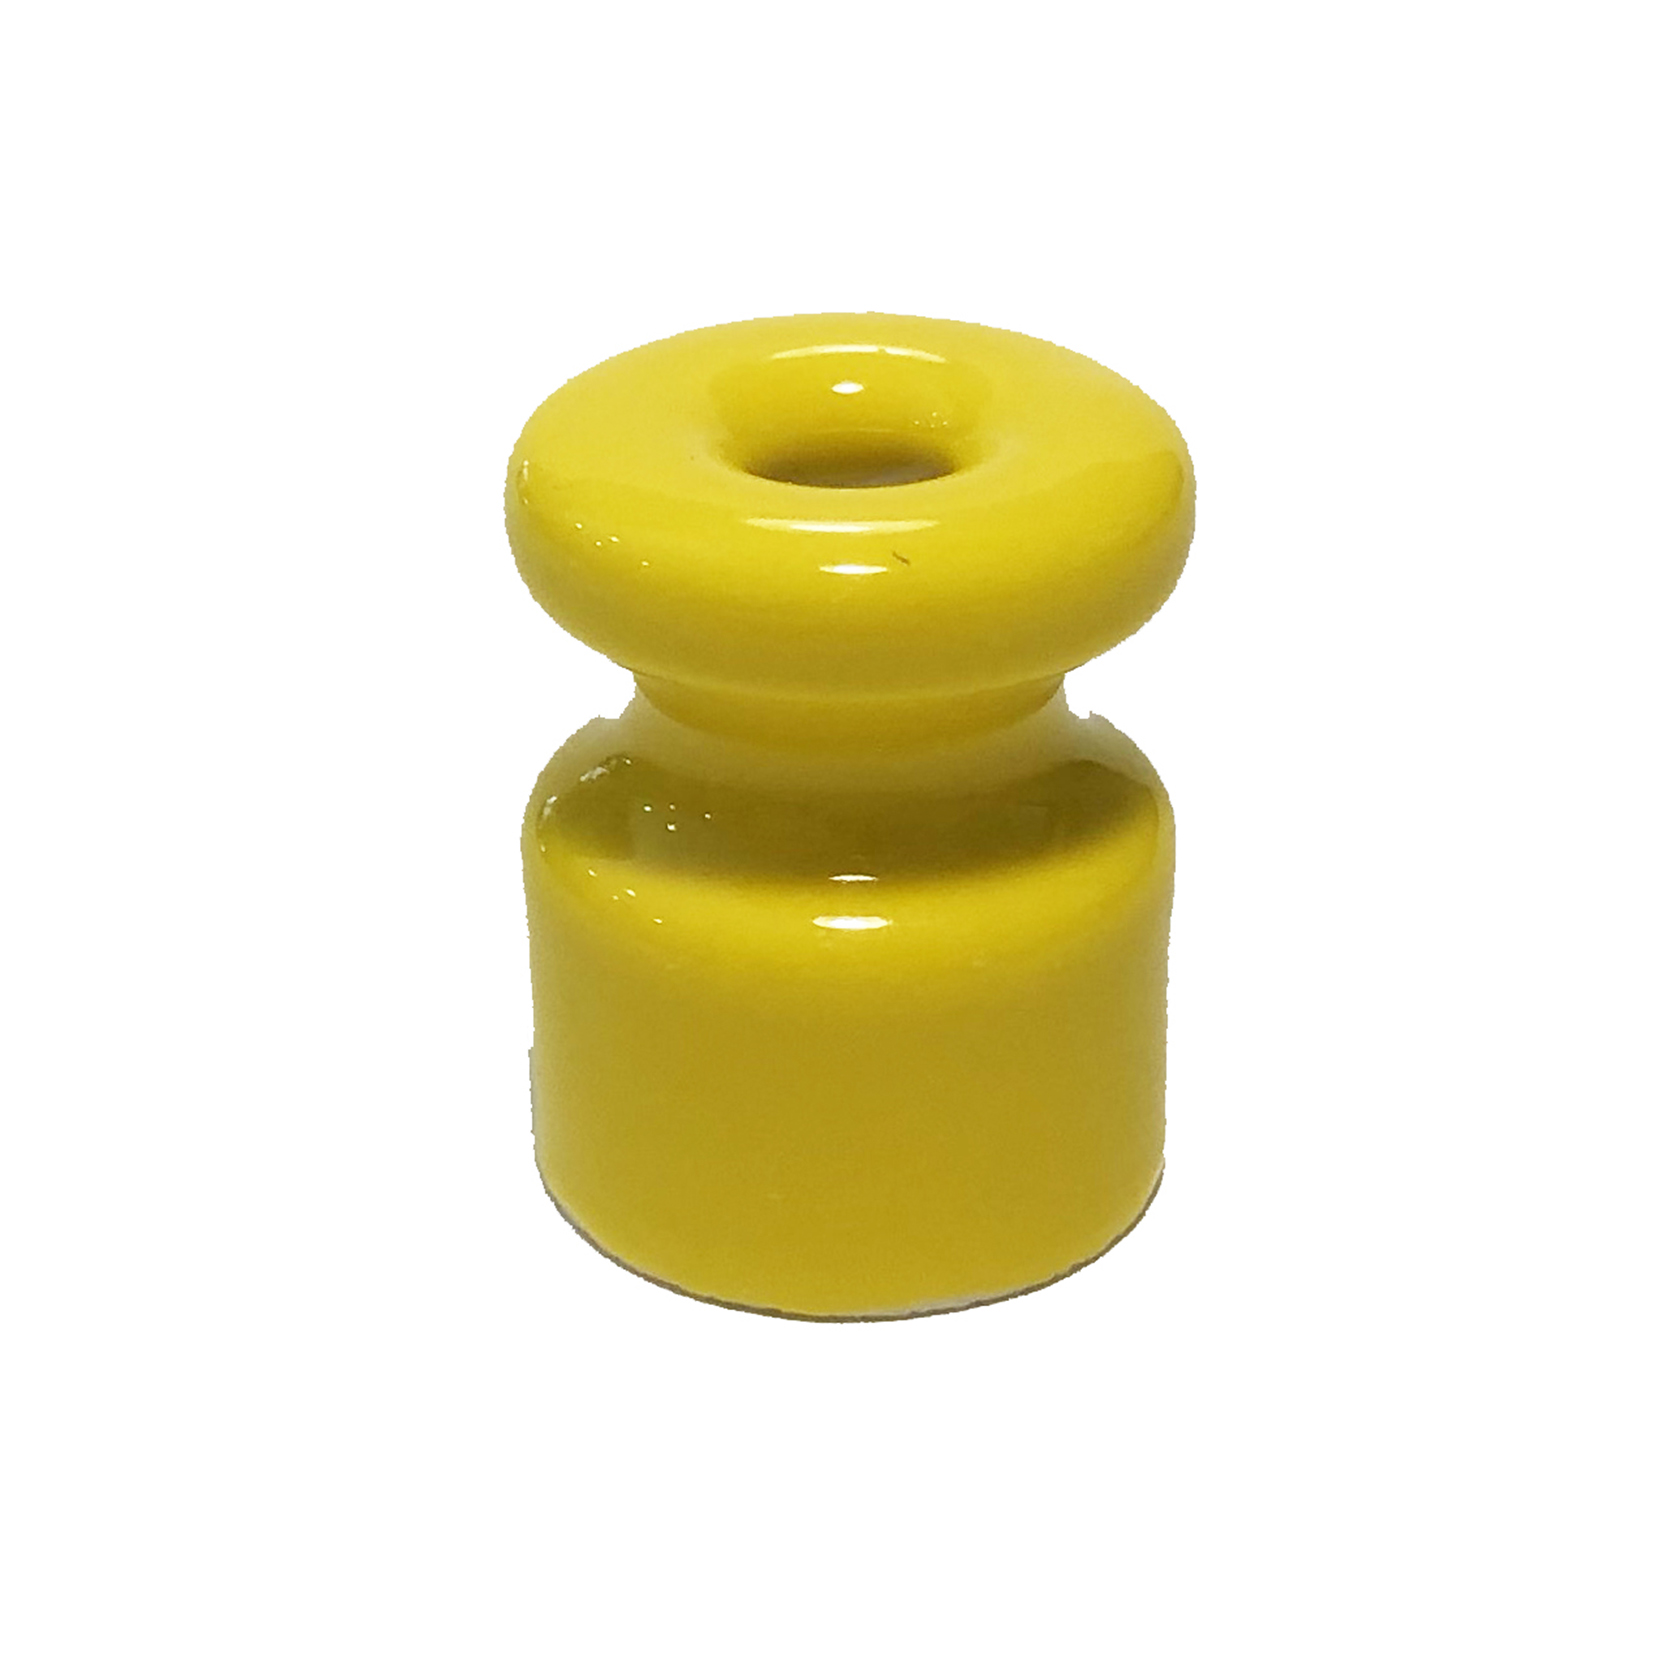 Aislador en porcelana amarillo grande para cable trenzado